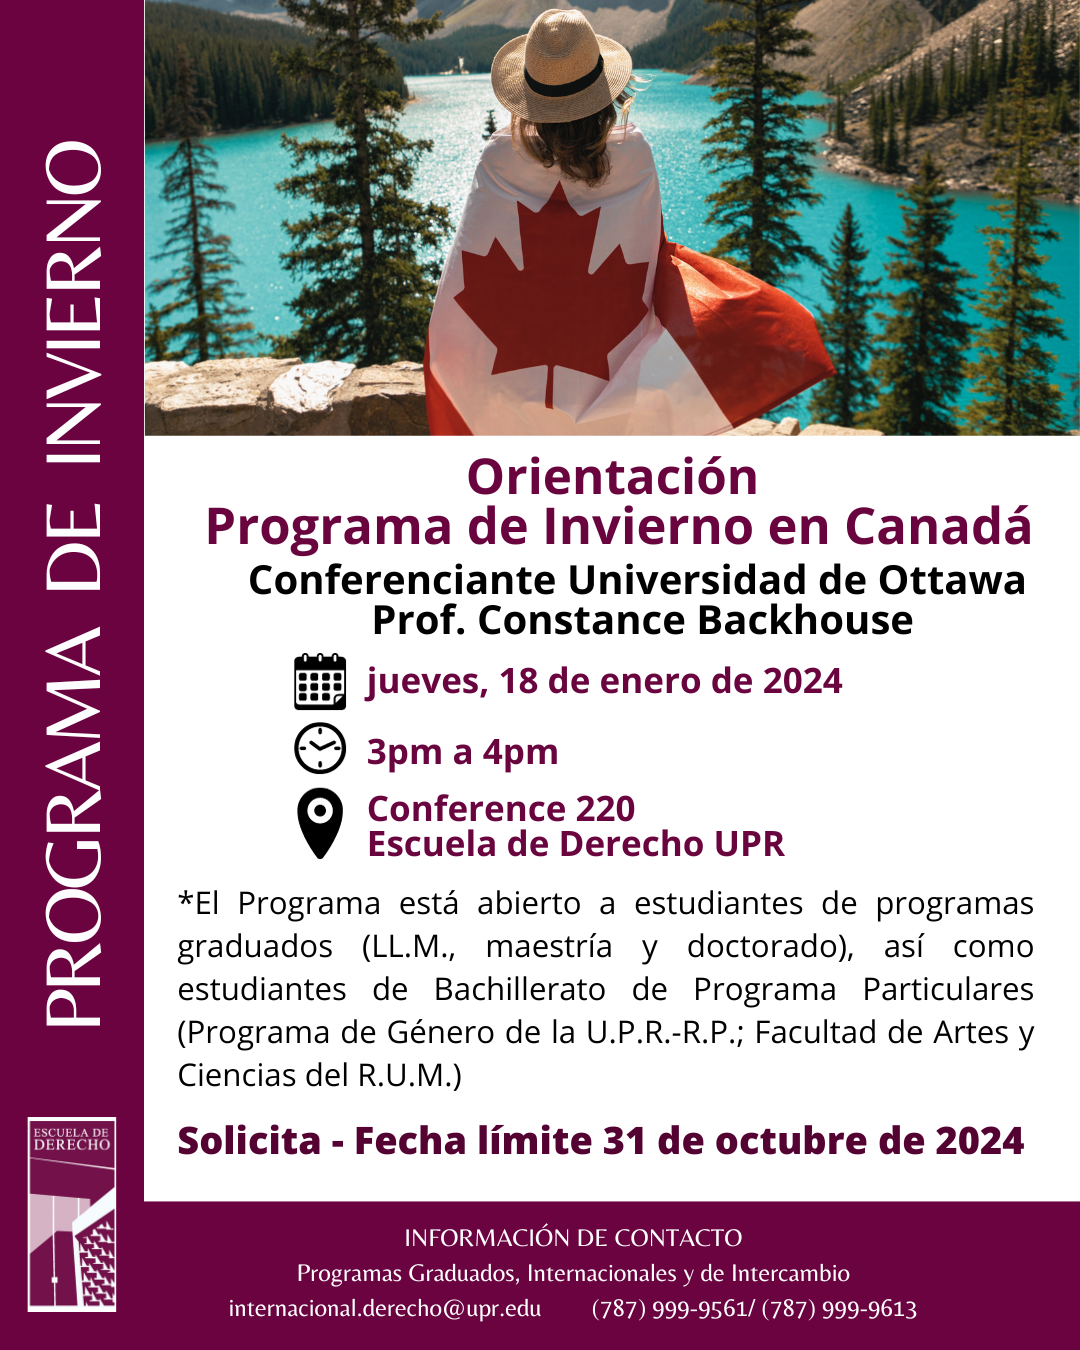 Orientación Programa de  Invierno en Canadá 18 de febrero a las 3 pm en el Conference 220 Escuela de Derecho UPR con la profesora Constance Backhouse.